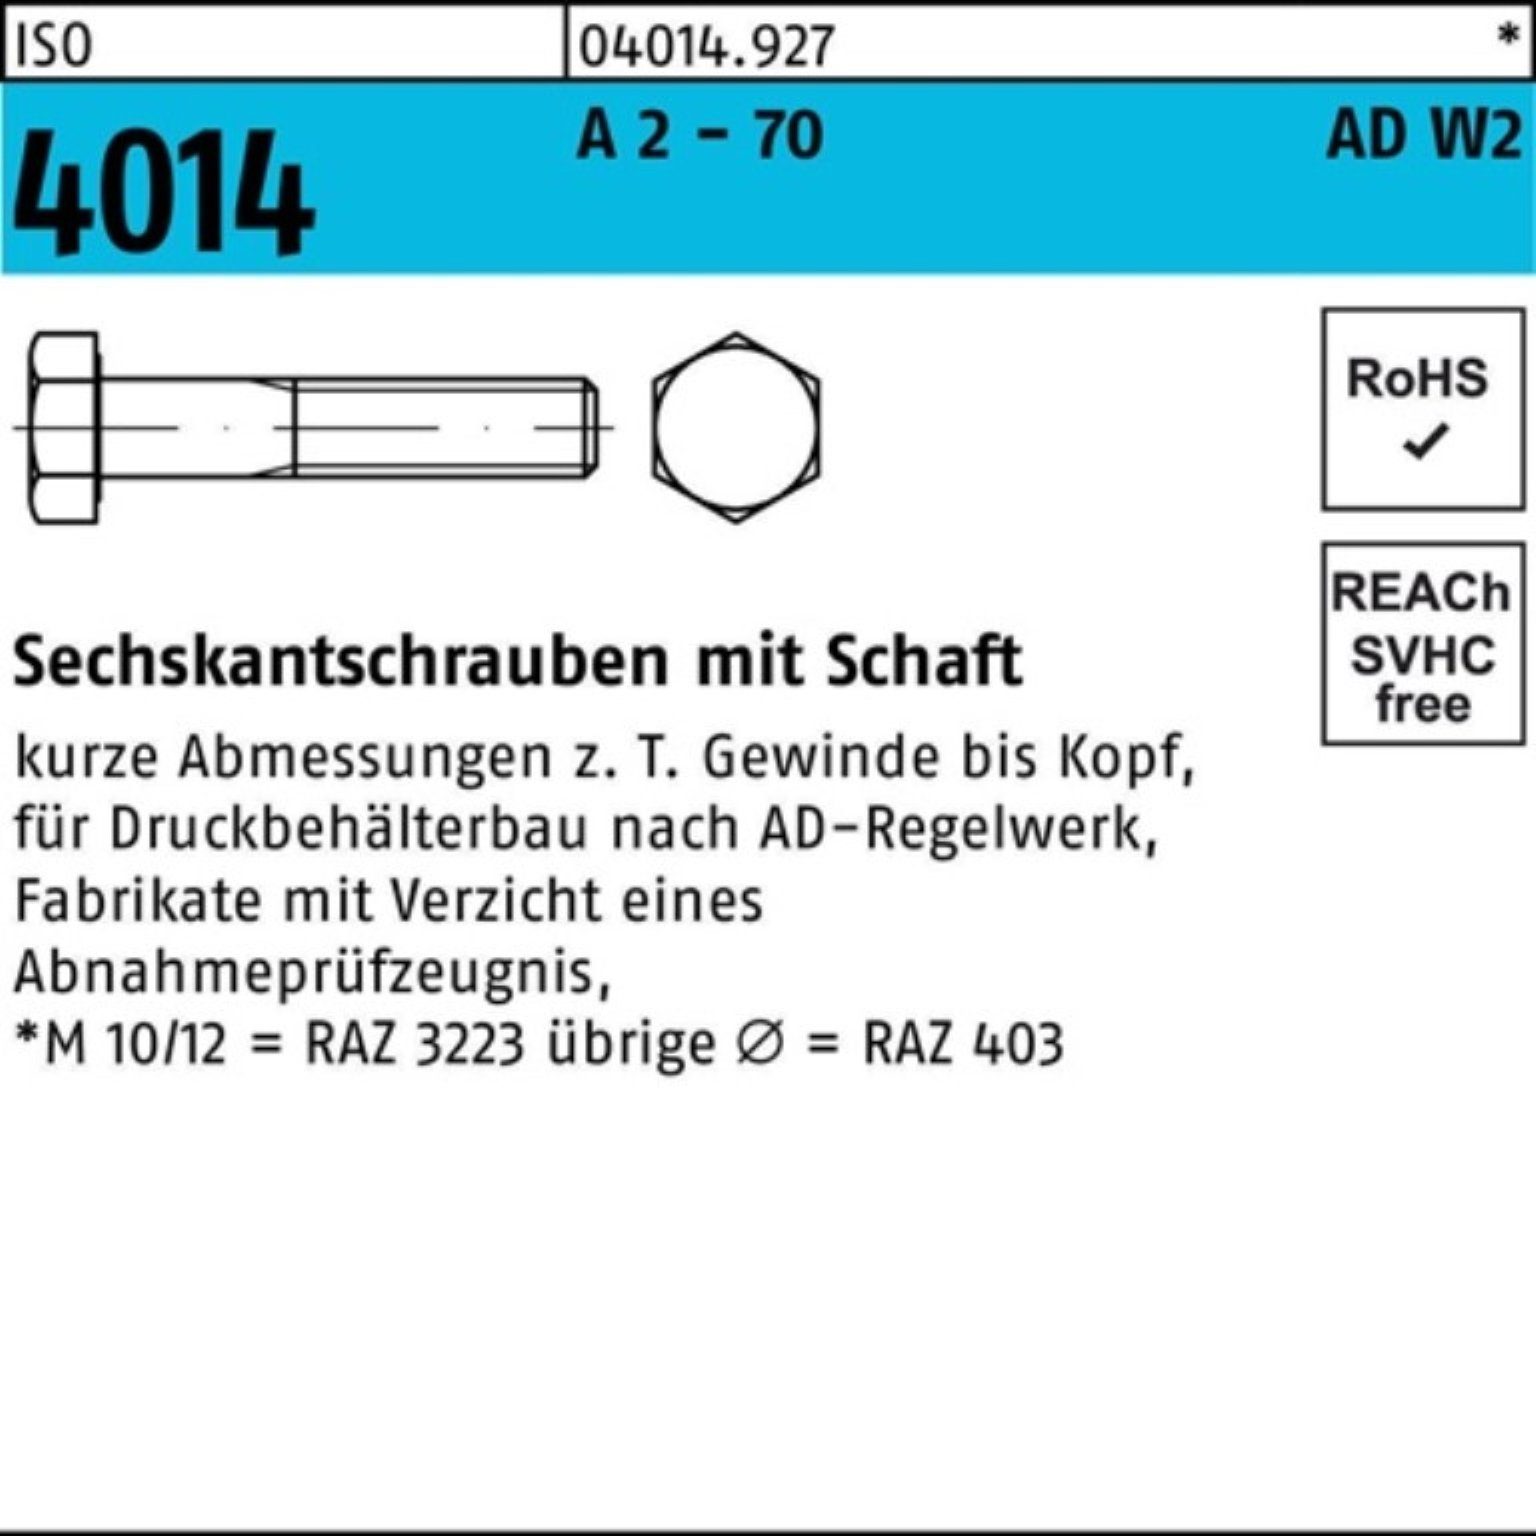 Bufab Sechskantschraube 100er Pack Sechskantschraube Schaft 70 - 4014 2 1 AD-W2 M20x A ISO 160